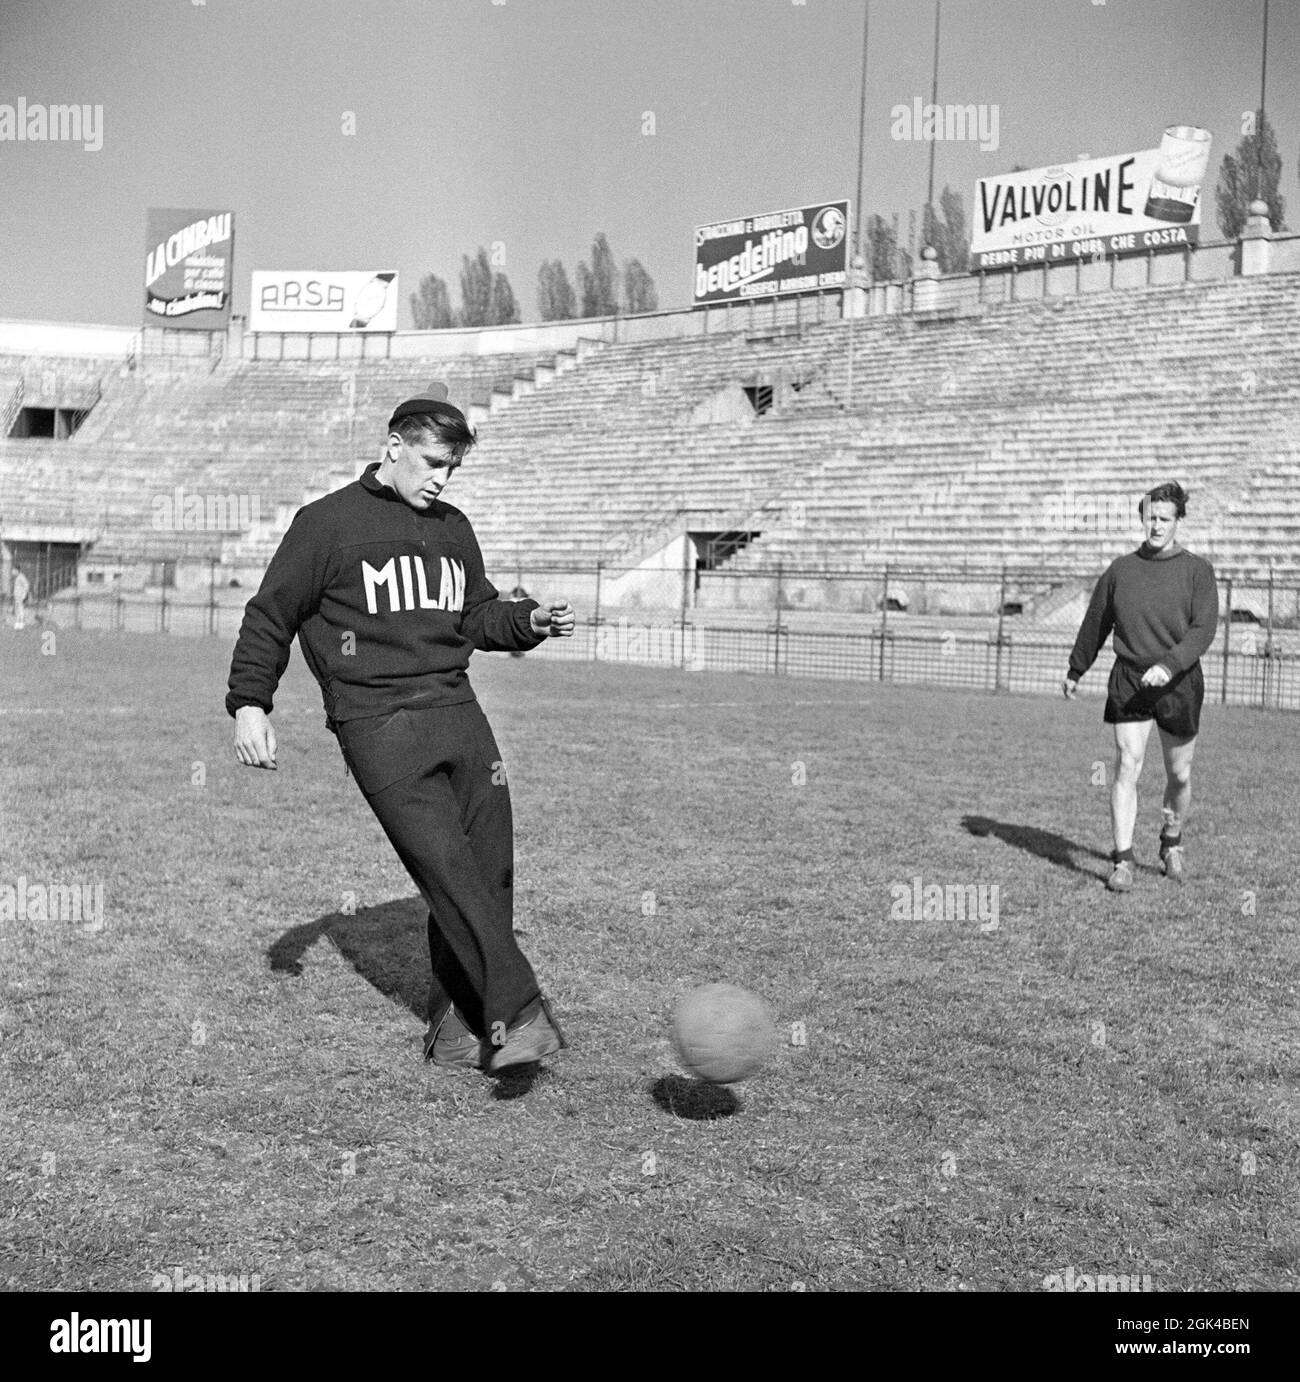 Gunnar Nordahl. 19 octobre 1921 - 15 septembre 1995. Joueur de football suédois, plus connu pour jouer au club de football italien AC Milan de 1949 à 1956. Il alambics détient le record des buts par apparition en Italie. Nordahl est considéré comme l'un des plus grands footballeurs suédois de tous les temps. Nordahl est devenu le premier footballeur professionnel suédois lorsqu'il est transféré à l'AC Milan le 22 1949 janvier. Plus tard, il s'associe avec son équipe nationale partenaires de grève, Gunnar Gren et Nils Liedholm pour former le célèbre trio GRE-No-Li, un trio réussi jouant ensemble pour AC Milan. Image Banque D'Images